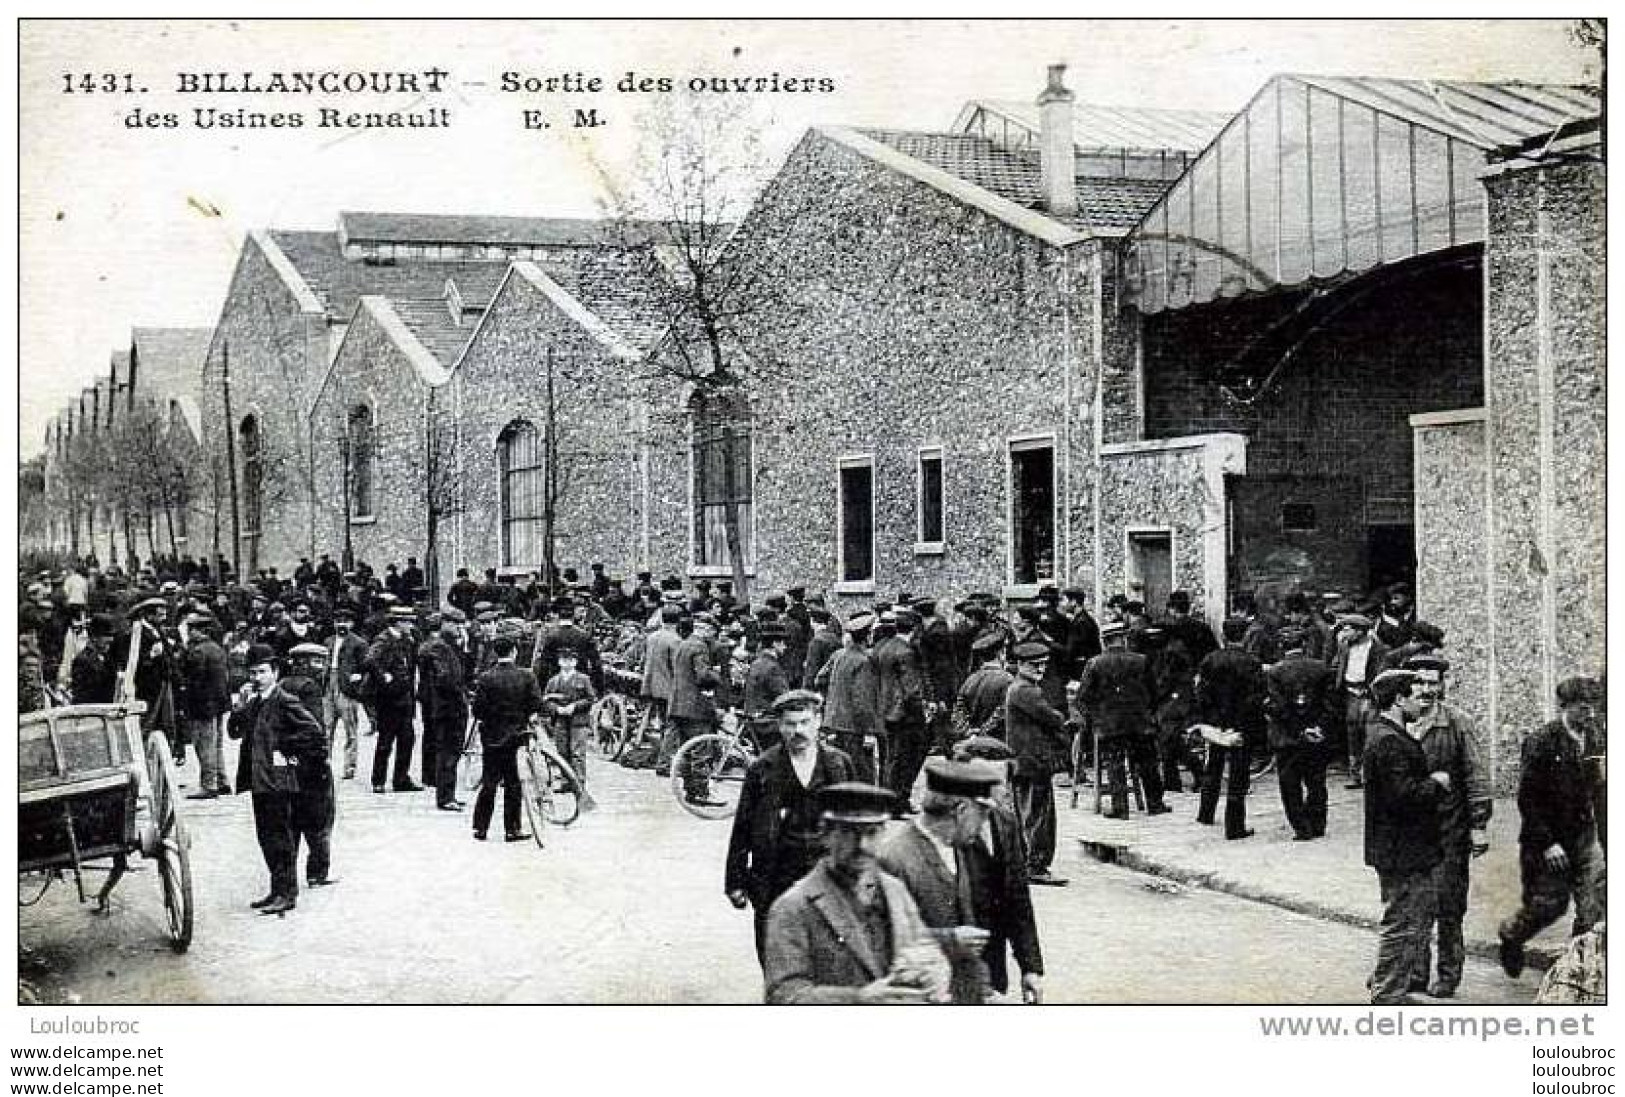 92 BILLANCOURT USINES RENAULT SORTIE DES OUVRIERS EDIT E.M. - Boulogne Billancourt